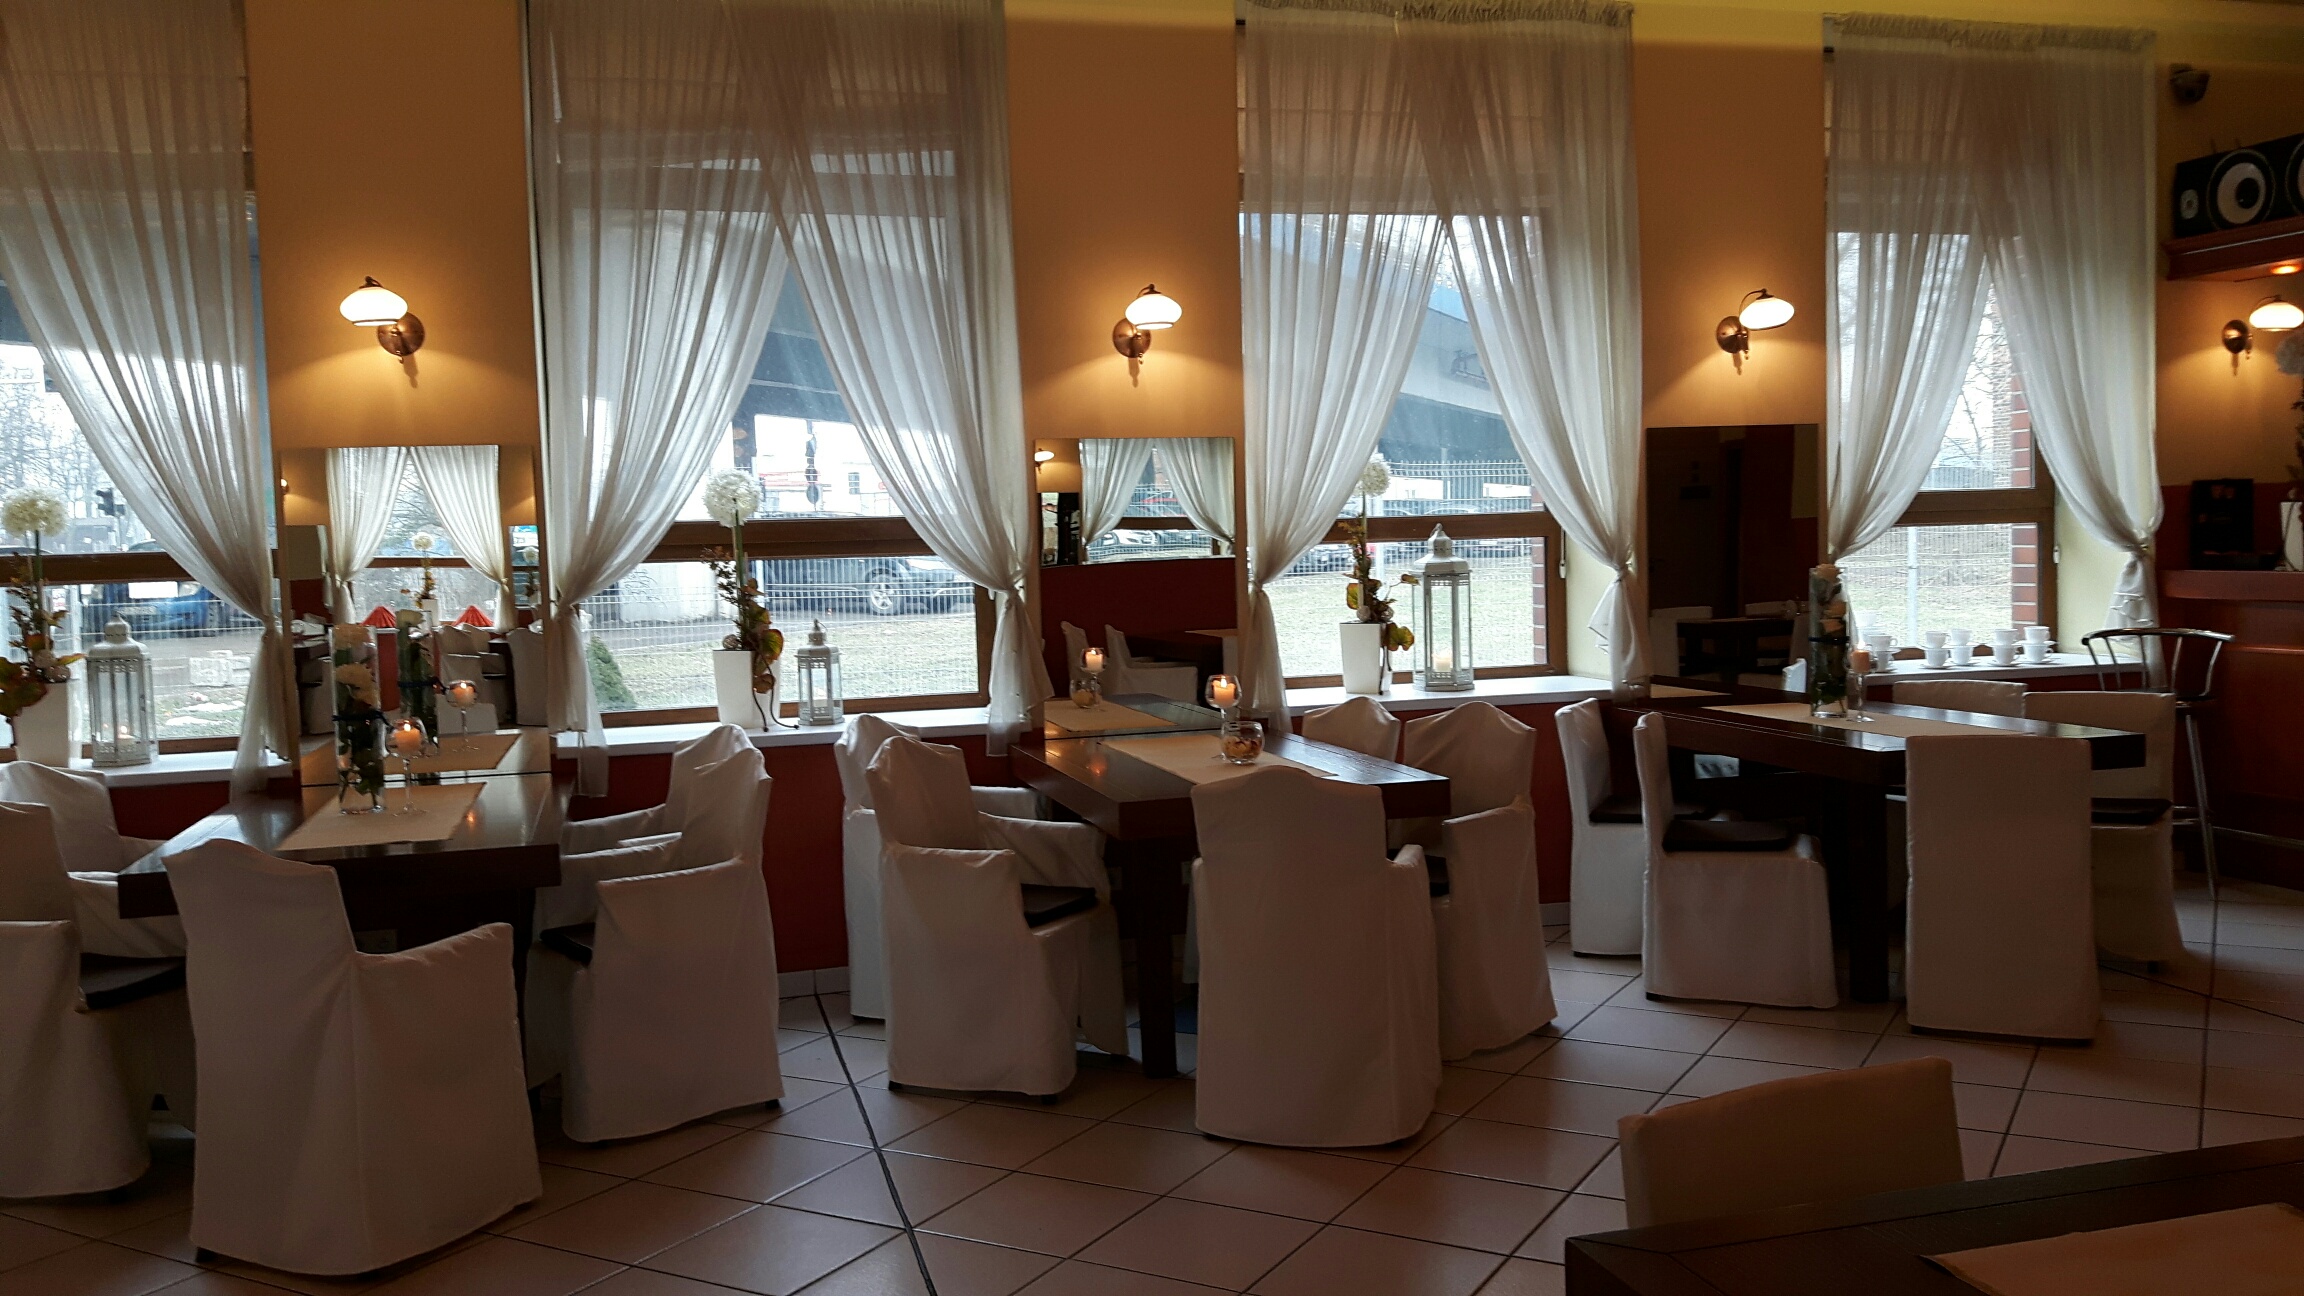 Dobra restauracja w Katowicach, tani catering dla firm, wesele, imprezy okoliczno艣ciowe, sale szkoleniowe, bankiety, 艢l膮sk